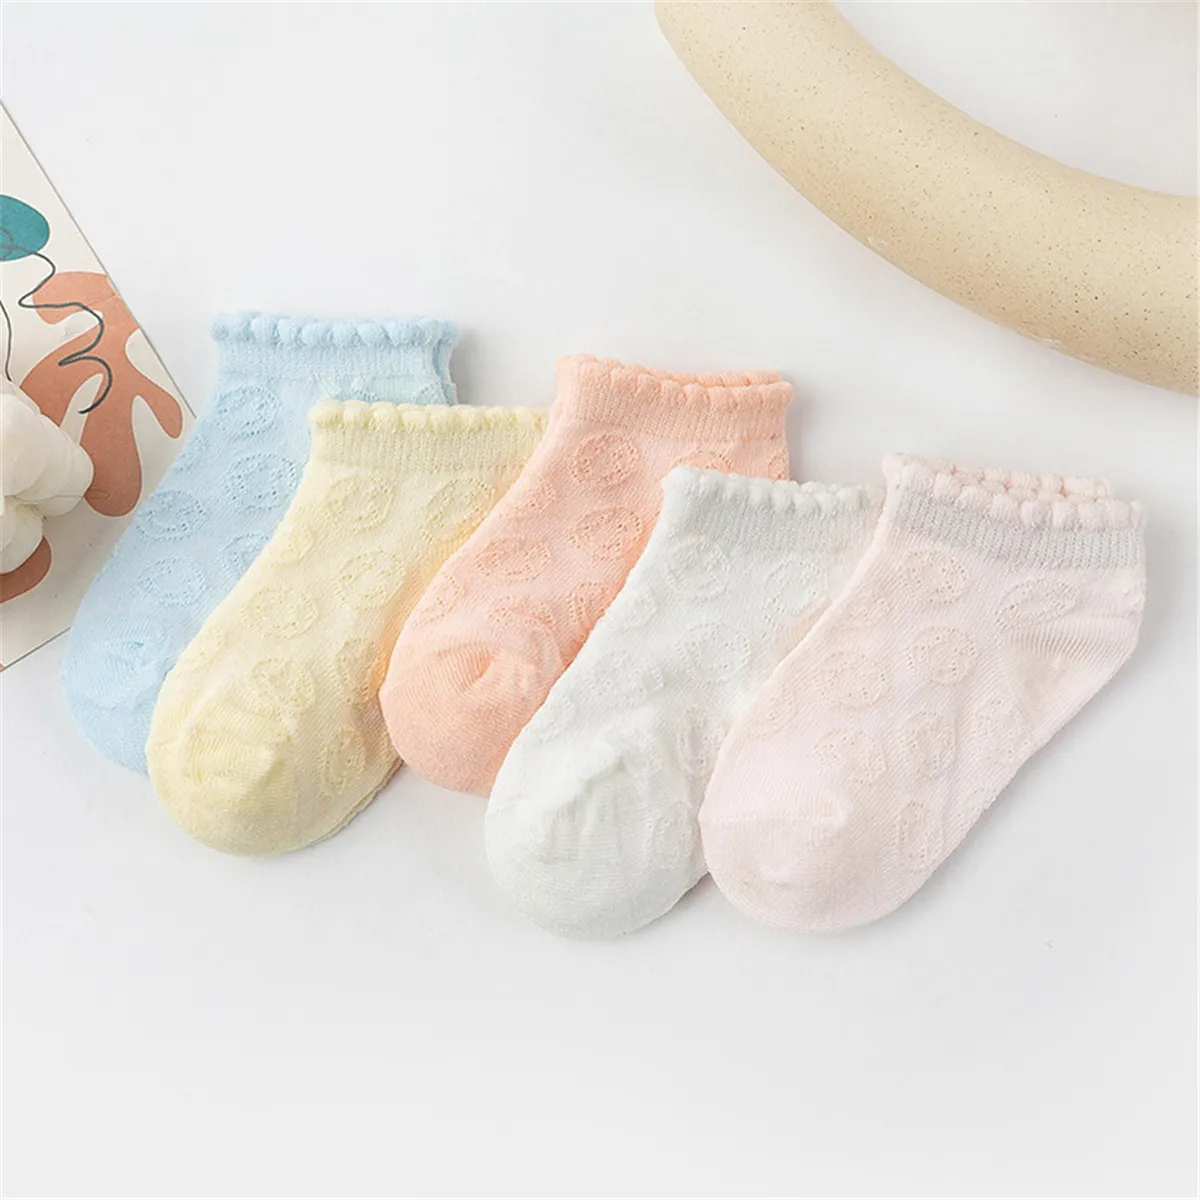 5 件裝嬰兒/幼兒/兒童休閒夏季透氣網眼襪 橙色 big image 1